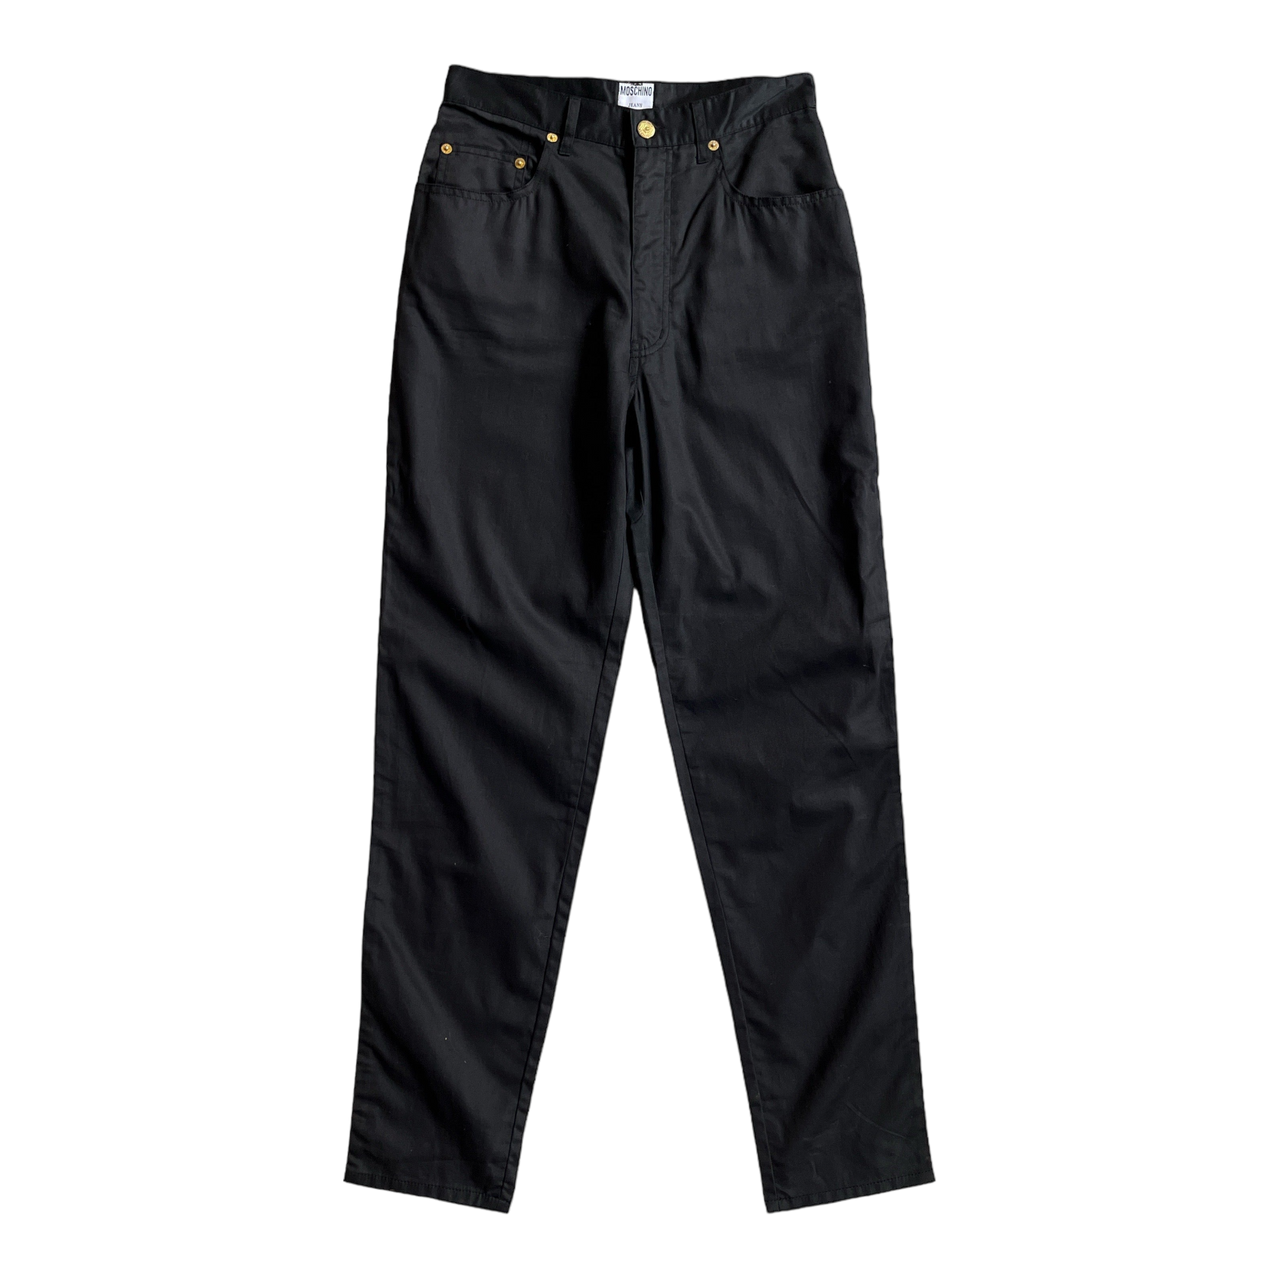 Moschino, Black Pants (30 x 31)